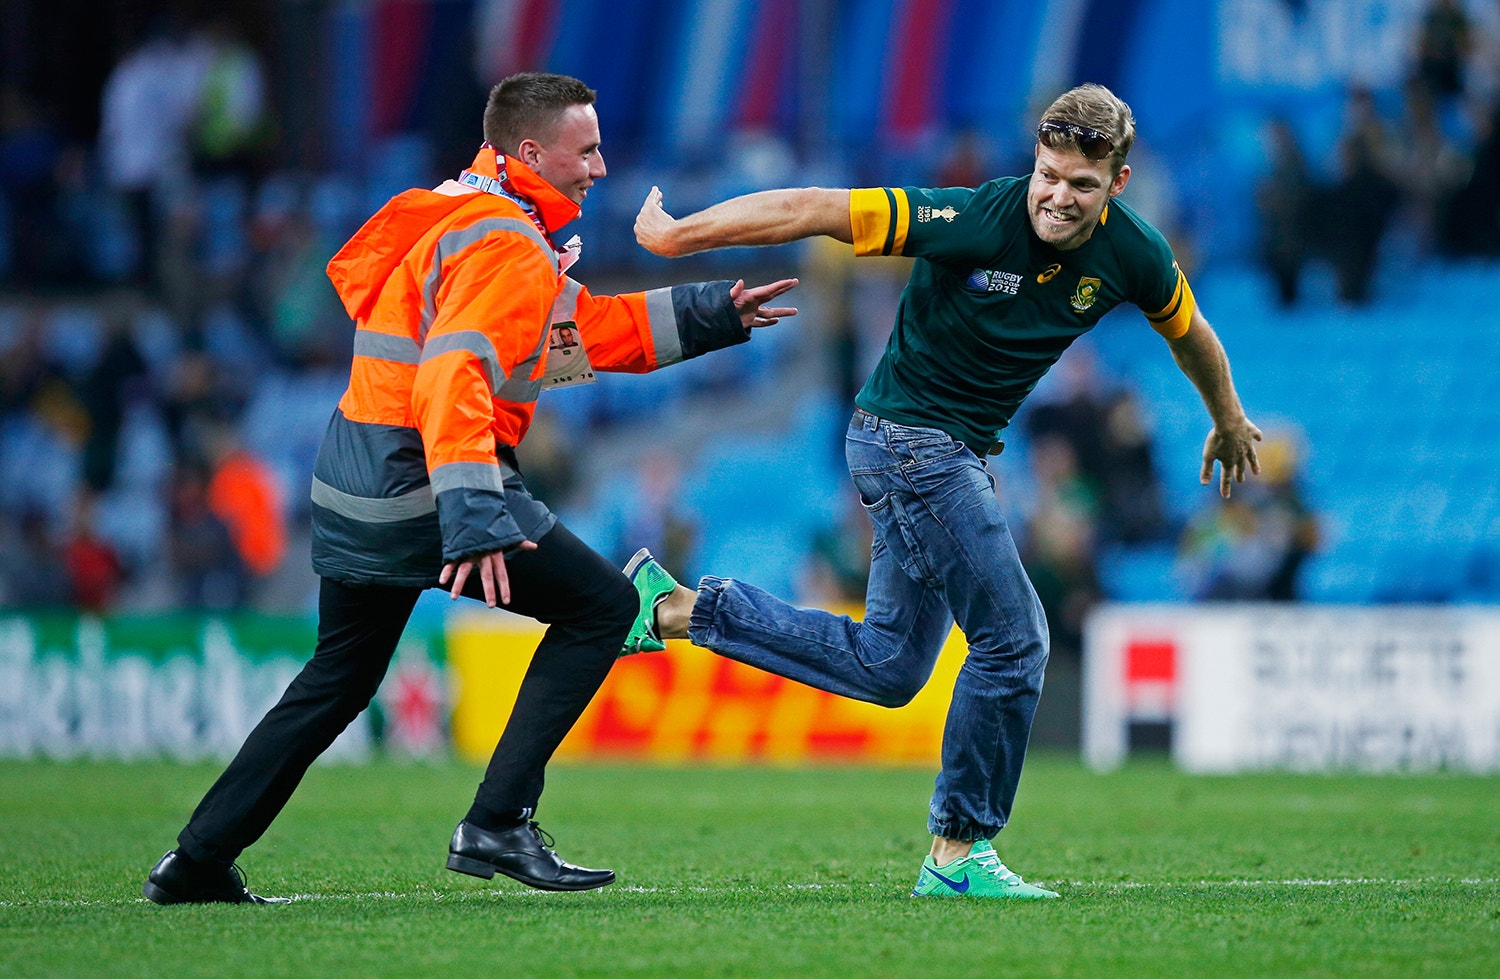  Um adepto da sele&ccedil;&atilde;o sul africana no Mundial de Rugby em  2015 /Peter Cziborra - Action Images via Reuters 